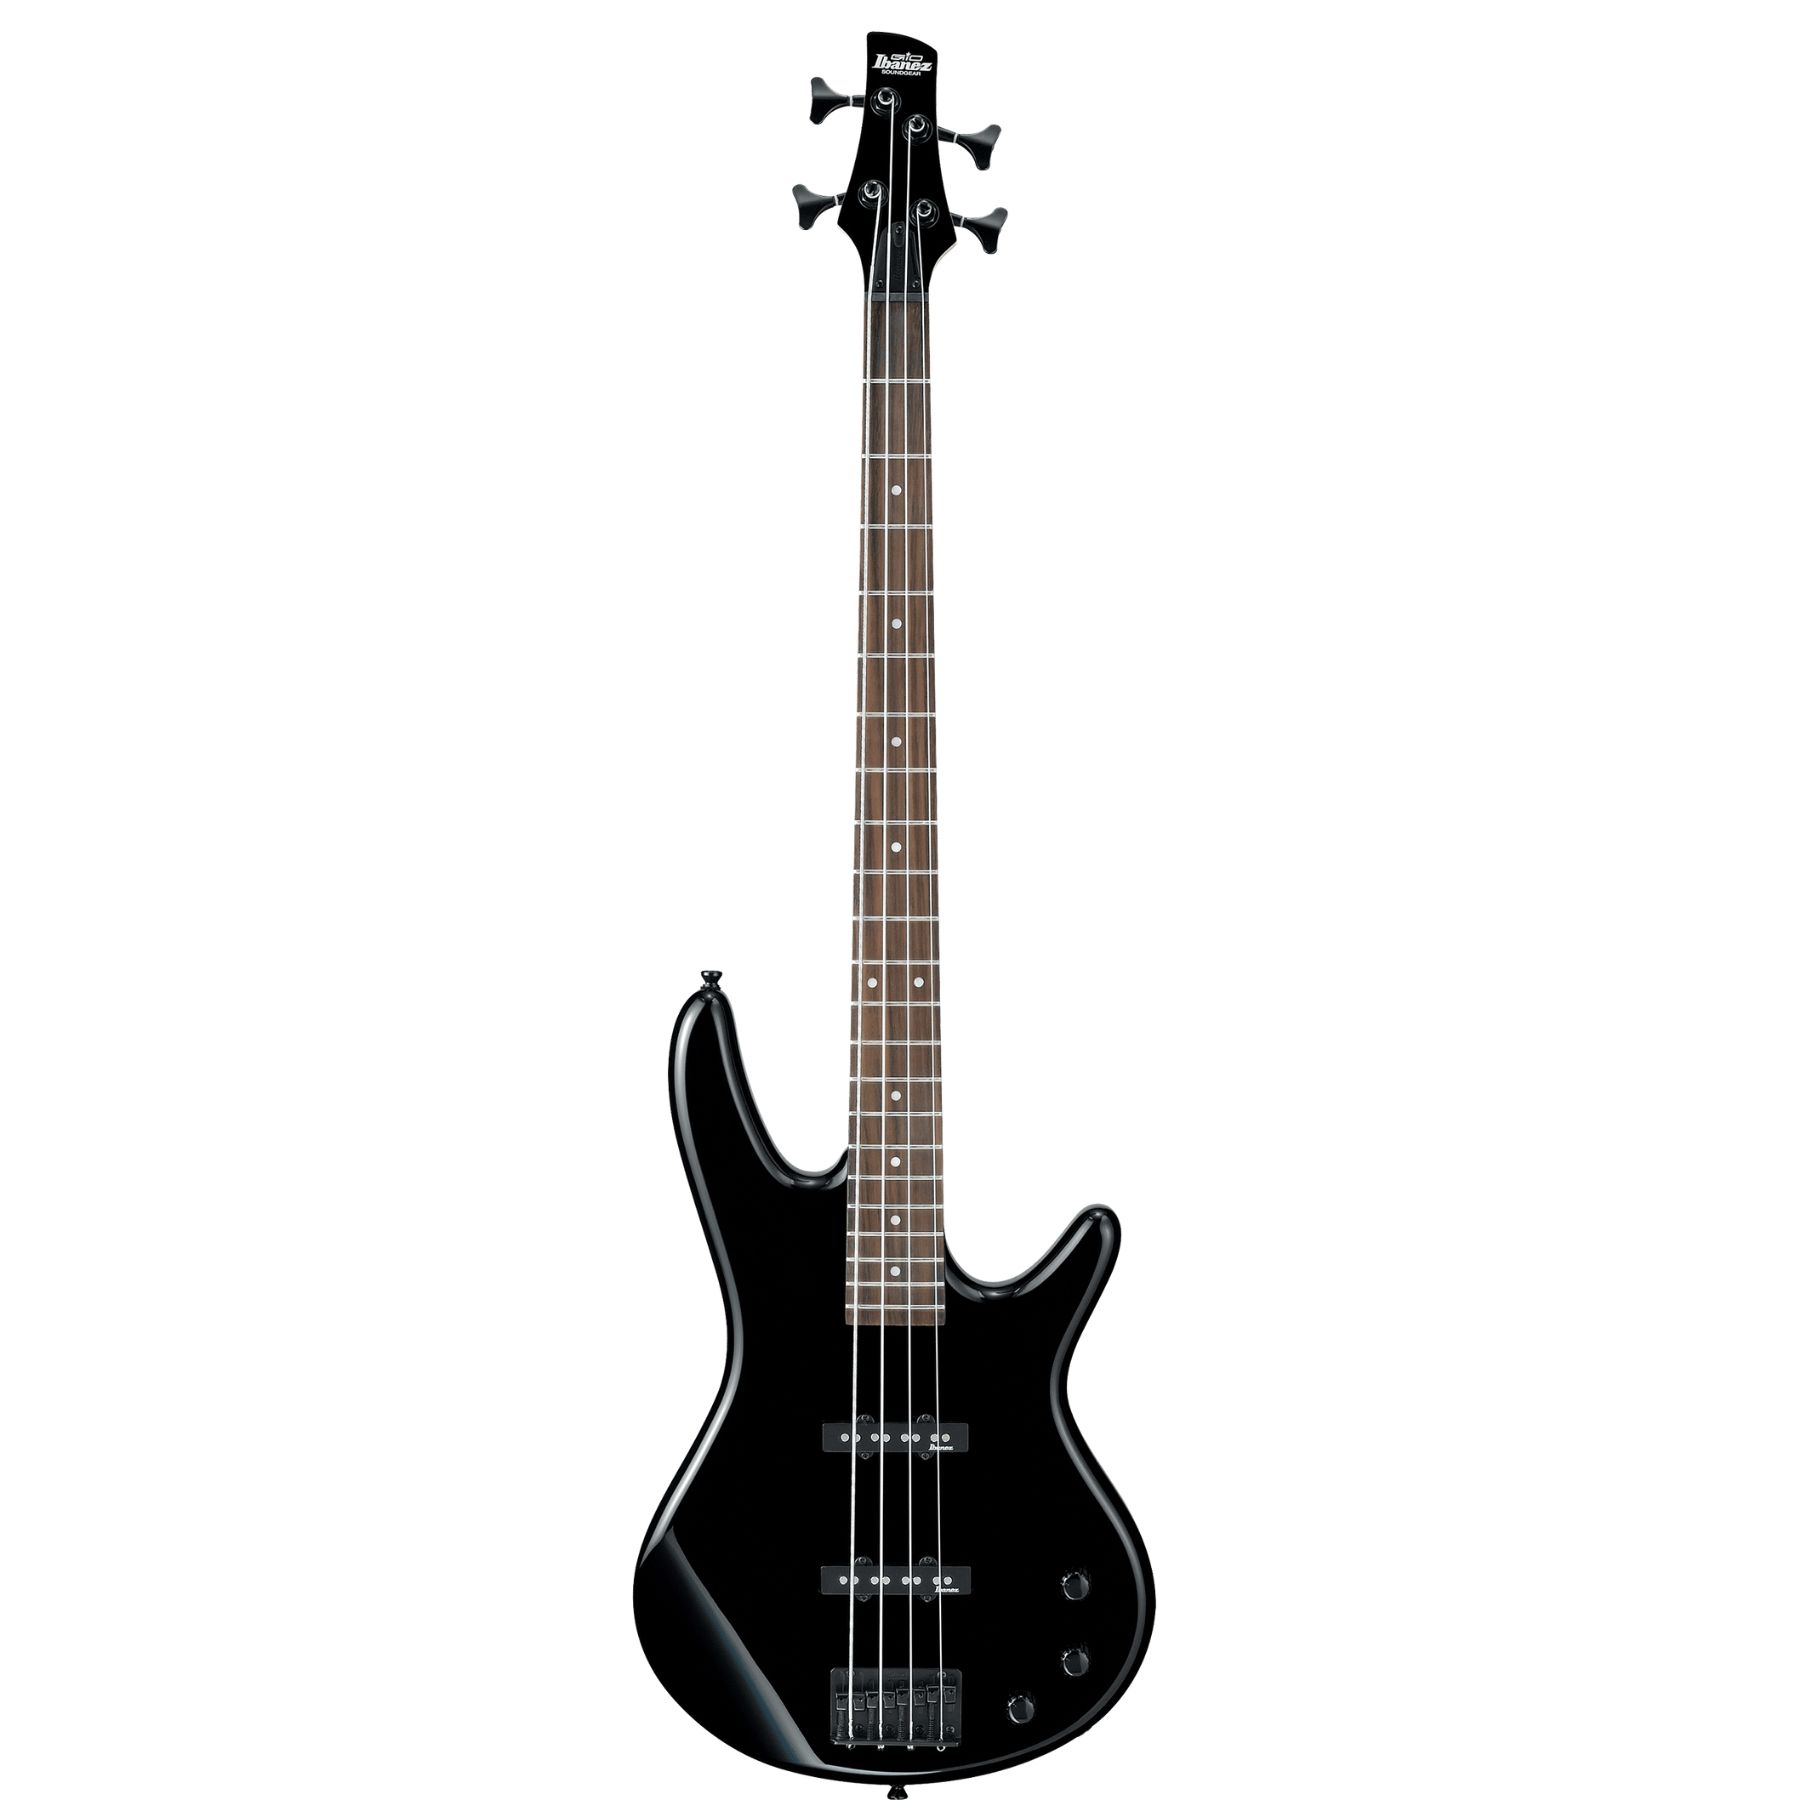 Buy Ibanez GSR320 Bass Guitar online in India